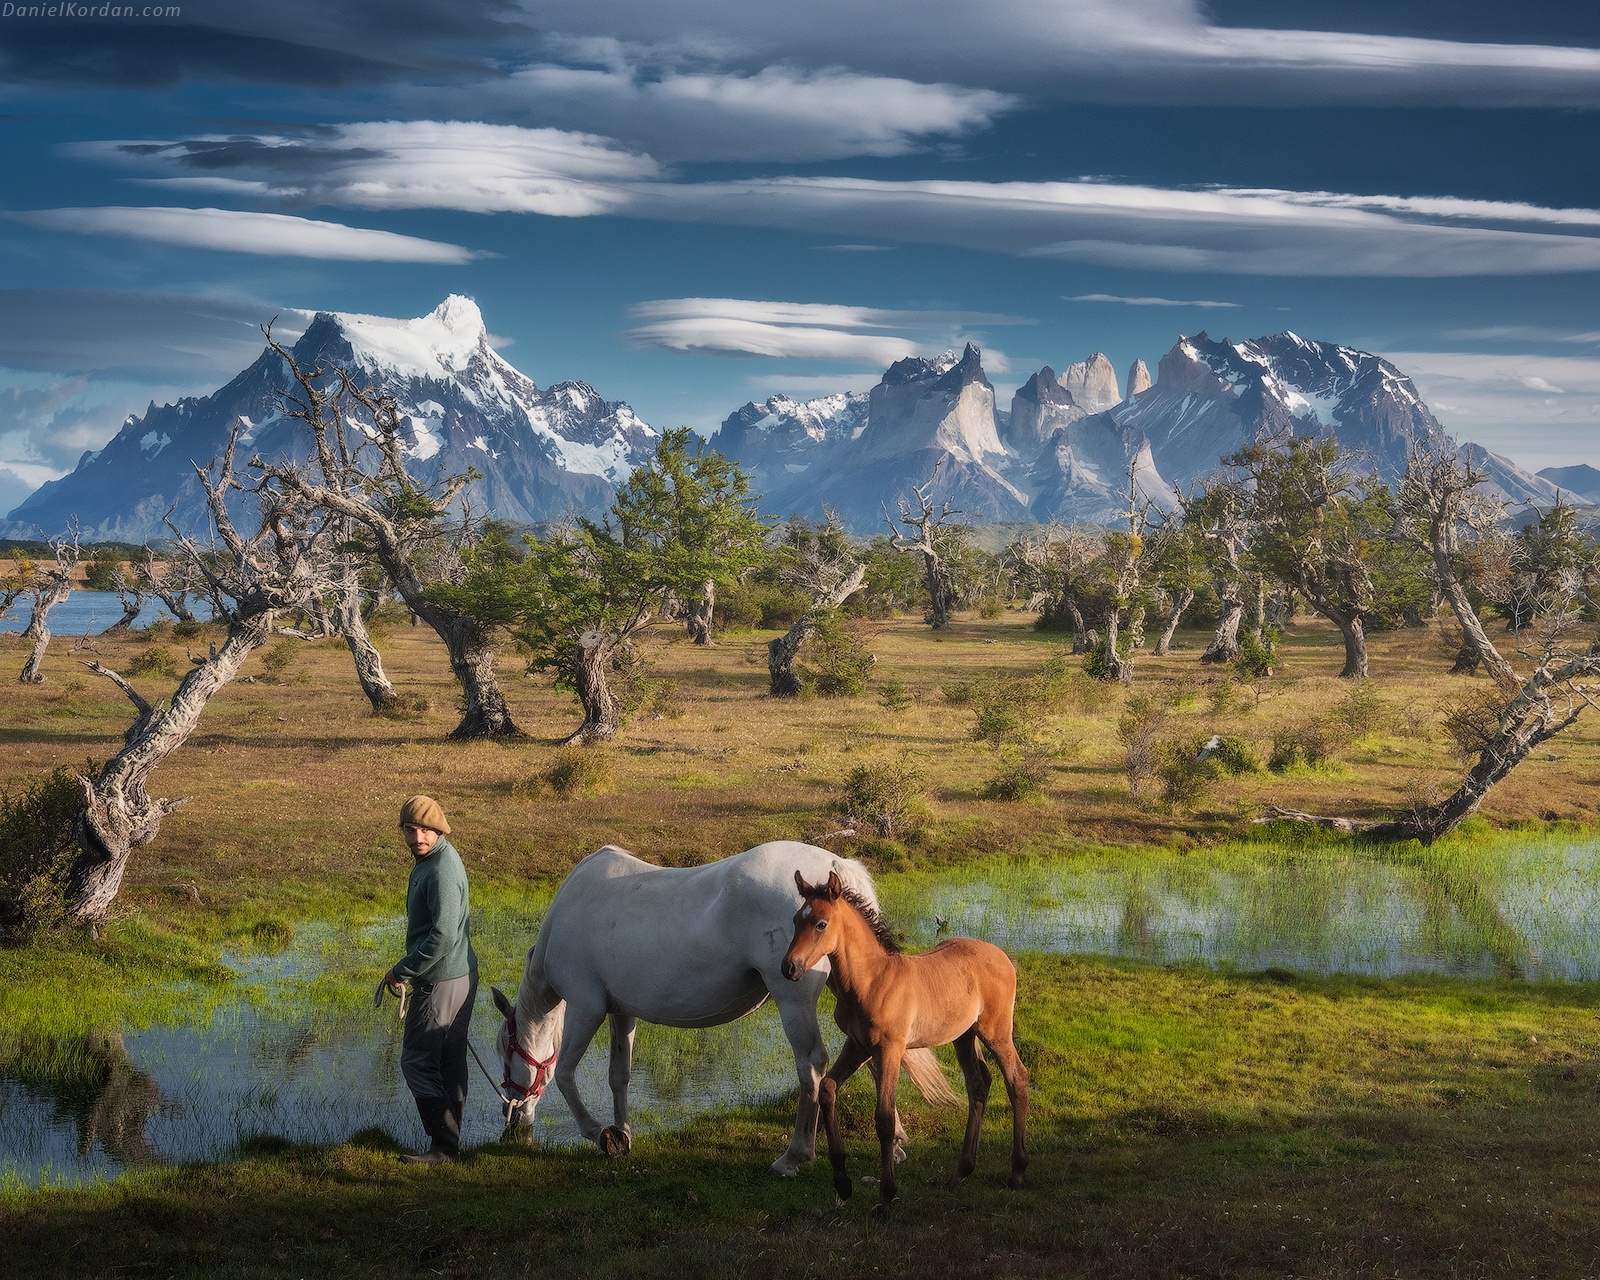 Пейзаж Даниила Коржонова - лошади и горы